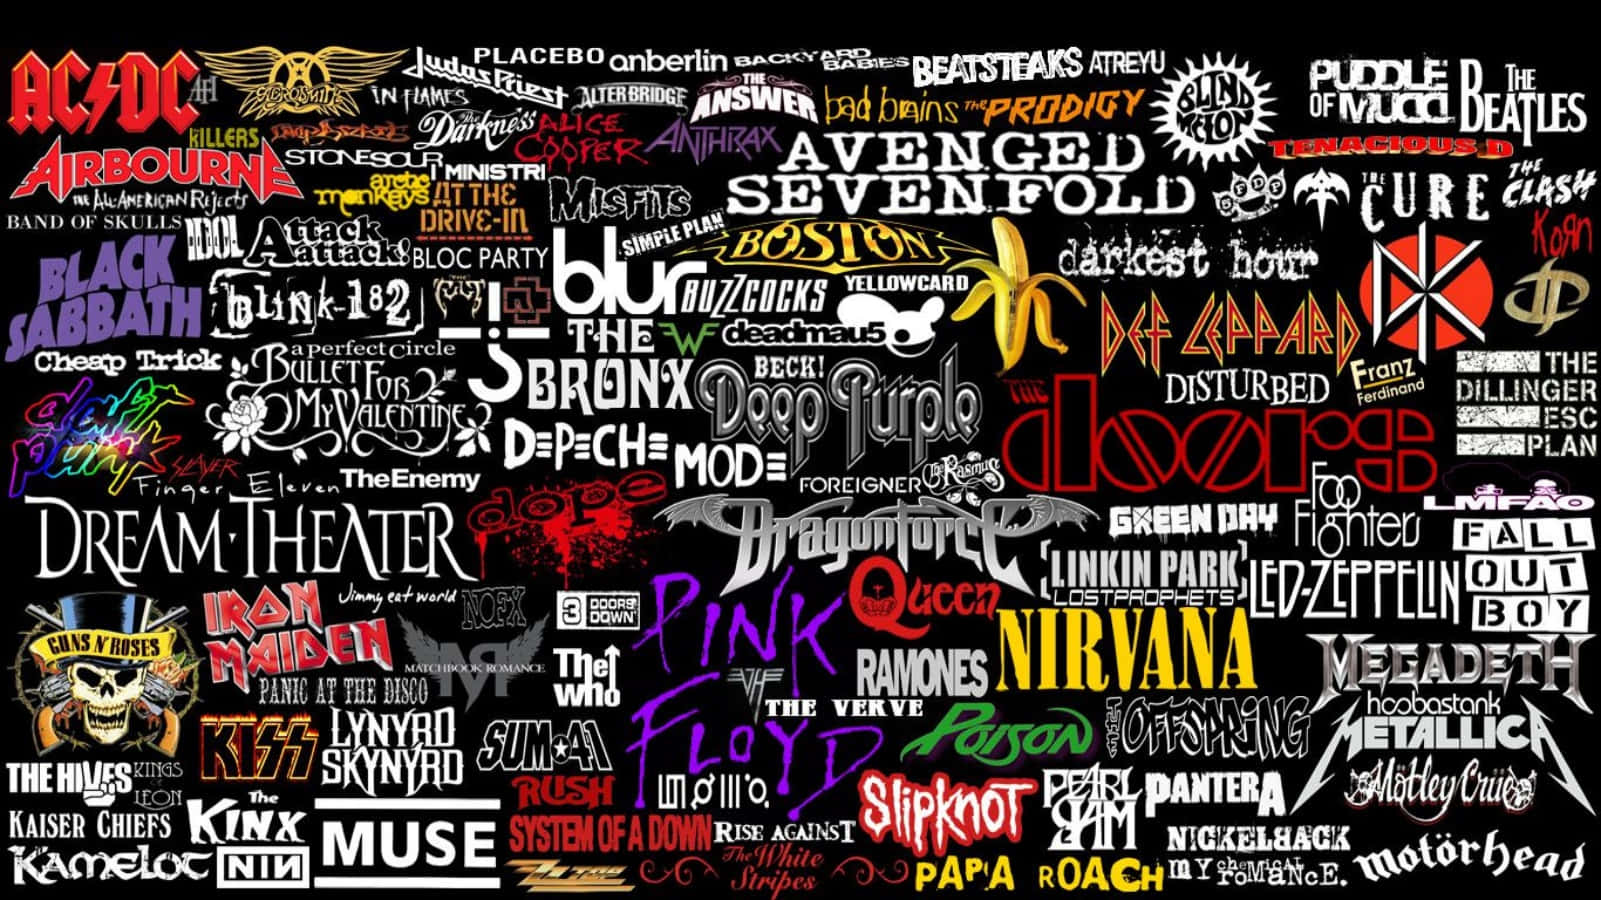 Et kollage af mange forskellige bands og deres navne Wallpaper